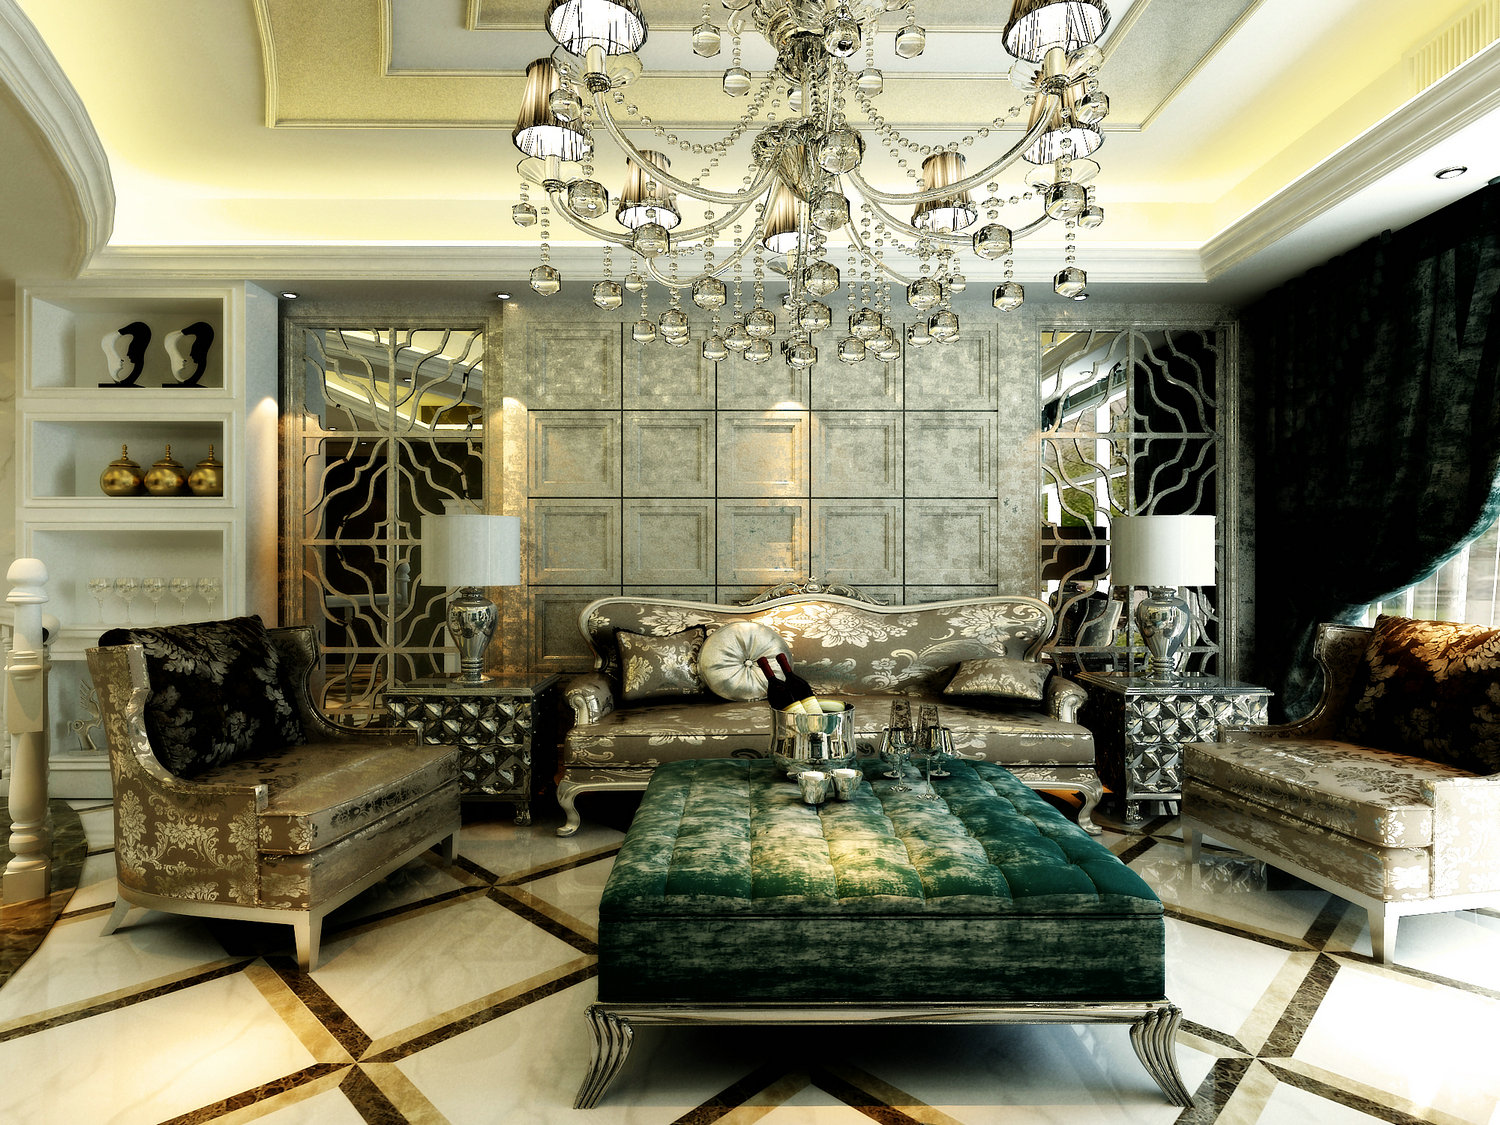 三居 客厅图片来自实创装饰晶晶在230平别墅豪华新古典风格设计的分享